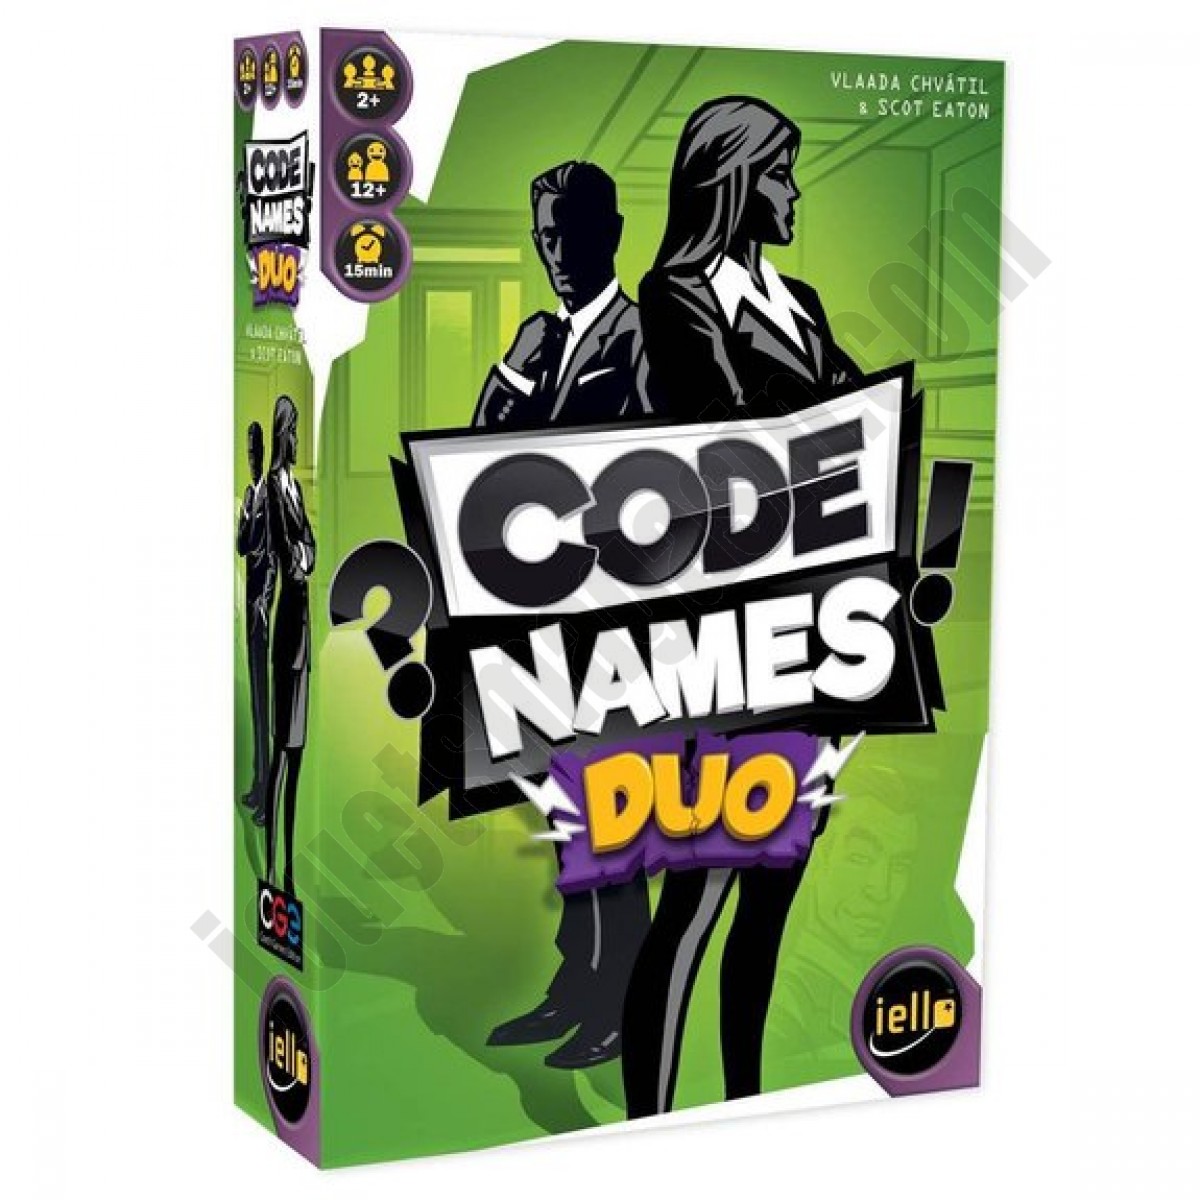 Codenames duo ◆◆◆ Nouveau - Codenames duo ◆◆◆ Nouveau